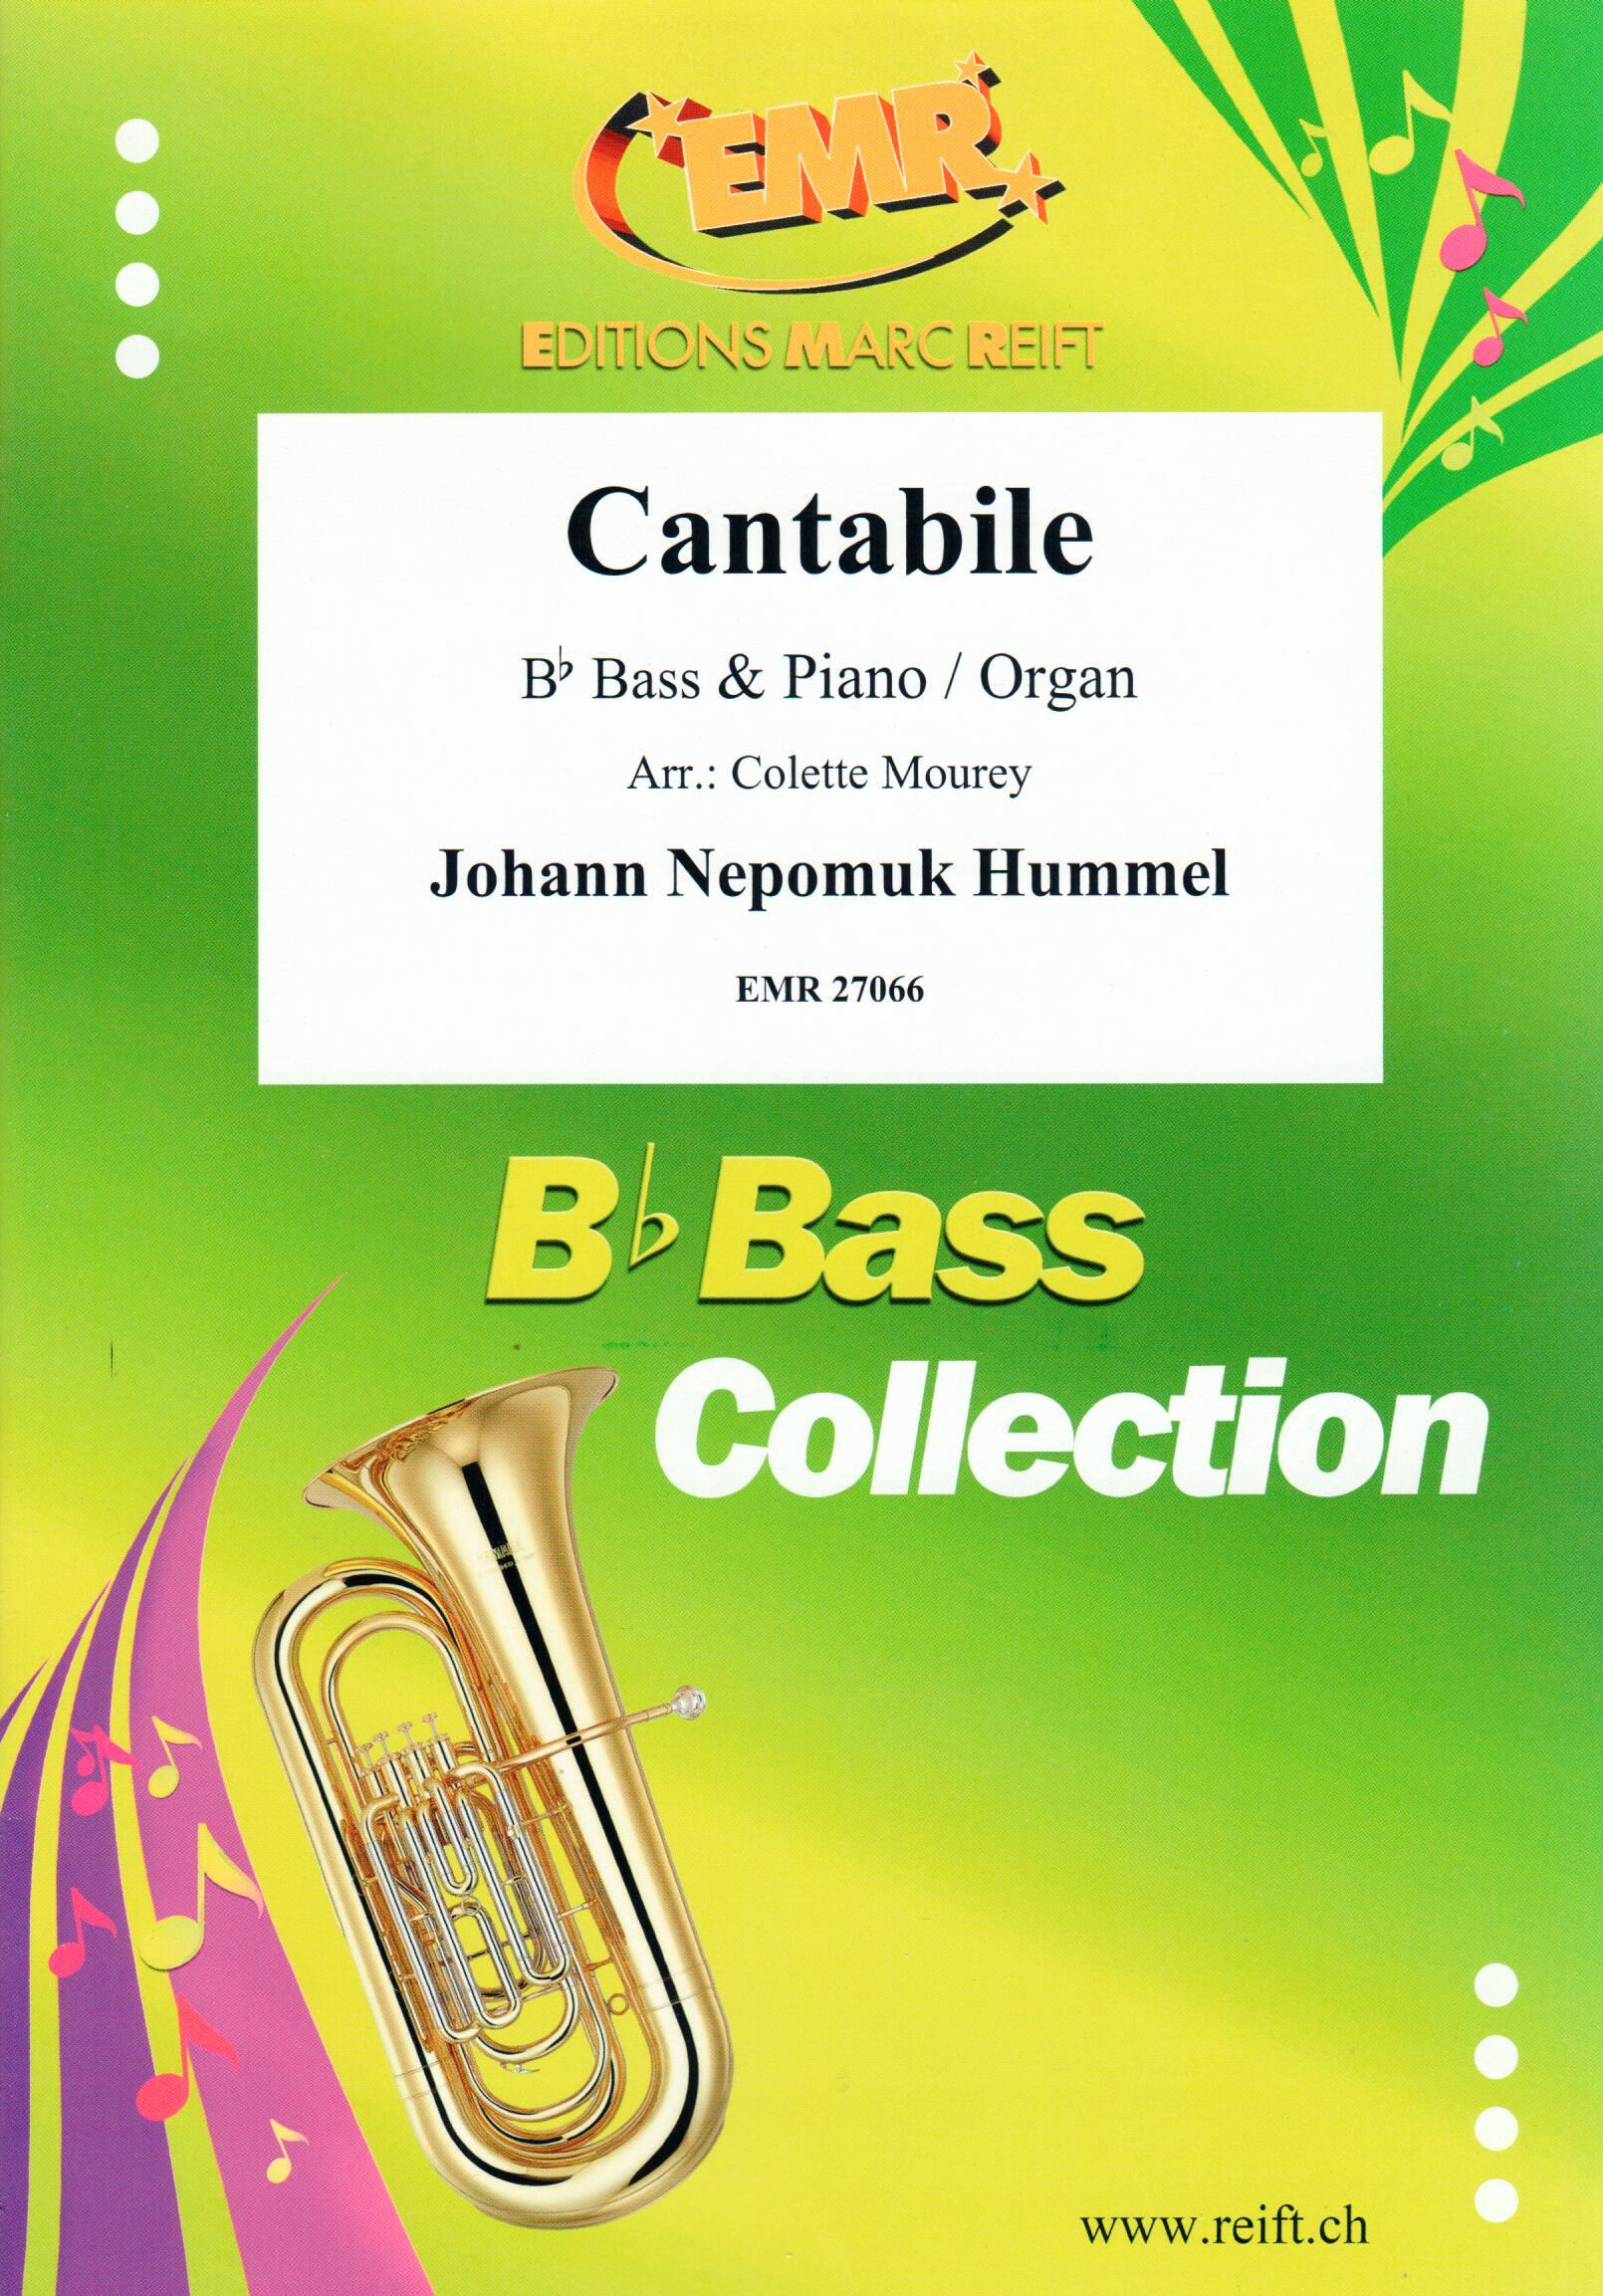 CANTABILE, SOLOS - E♭. Bass